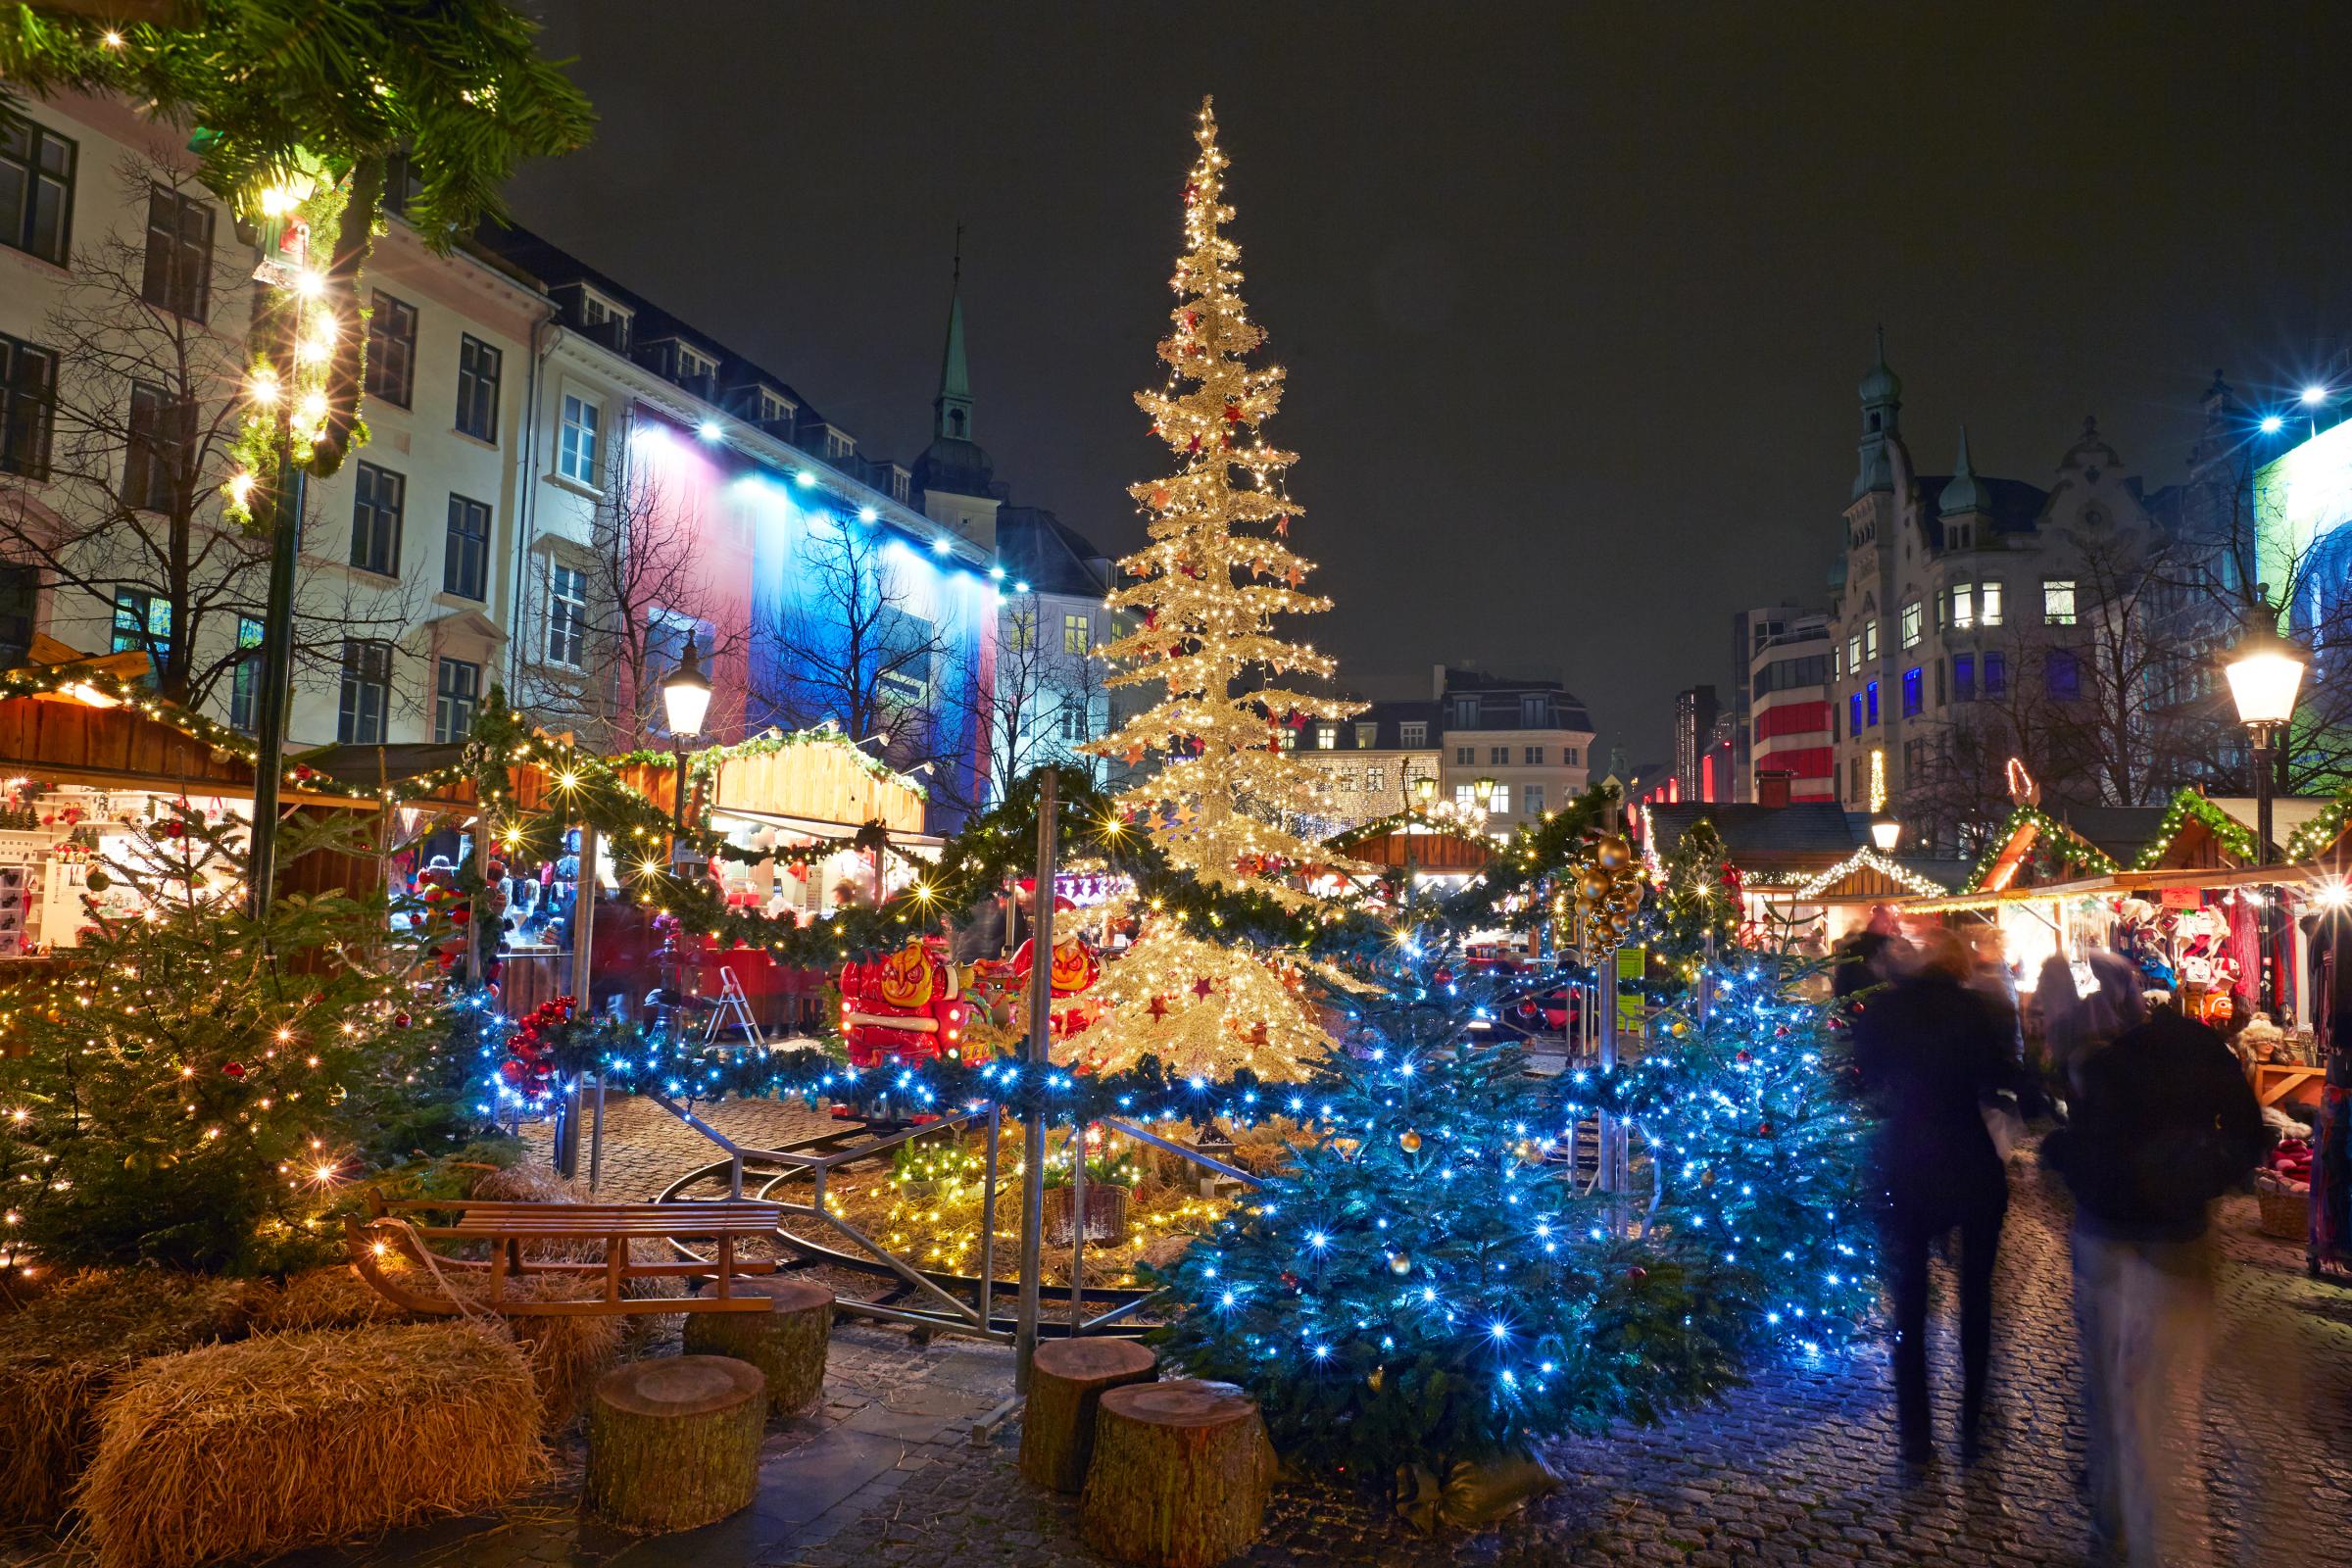 Copenhagen Christmas market at night